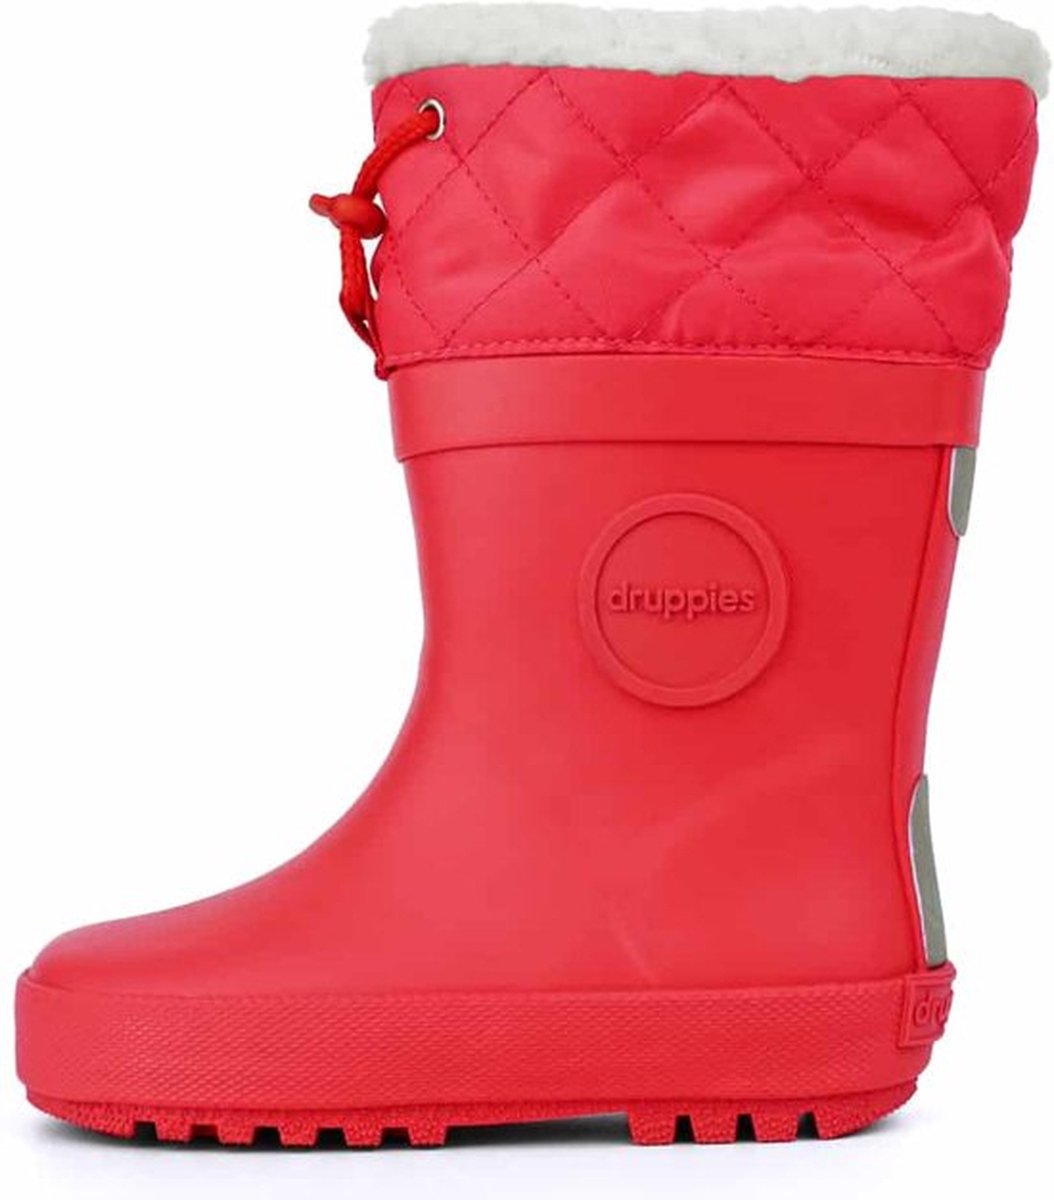 Druppies Regenlaarzen Gevoerd - Winter Boot - Roze - Maat 34